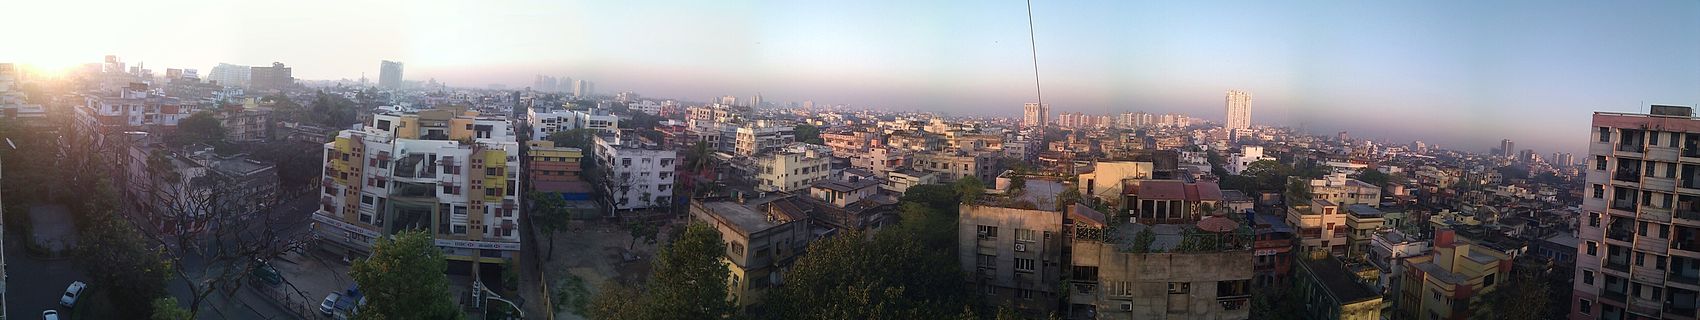 Panorámakép a város egy részéről. Az indiai nagyvárosokban erős a légszennyezettség,[13] itt is látszik a szmog a város felett.